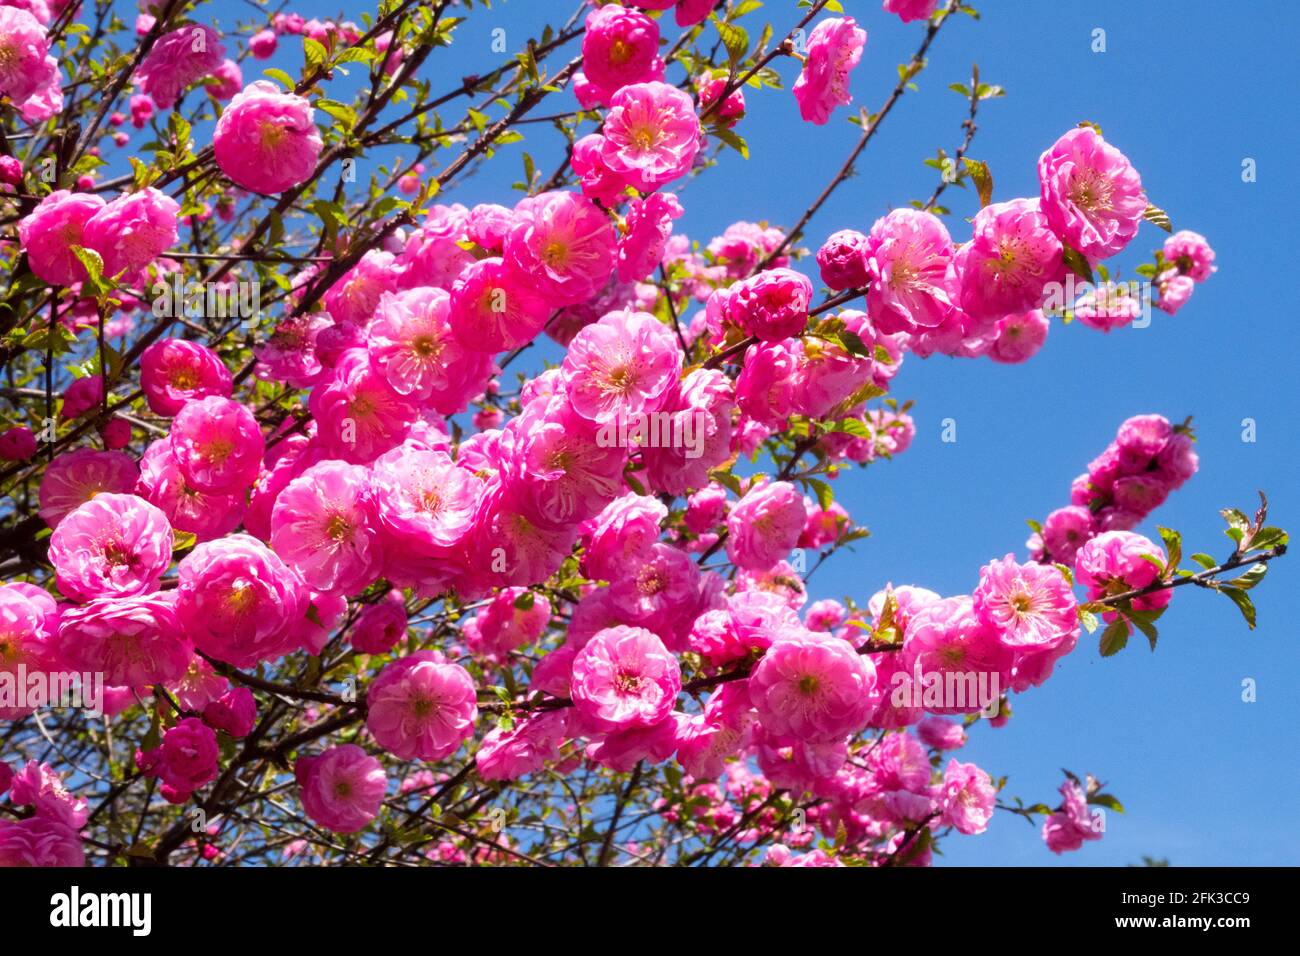 Fleurs printanières roses arbustes fleuris avril fleurs branches florissantes afghanes Cherry Prunus triloba Rosenmund fleurs roses fleurs amandes Prunus Banque D'Images